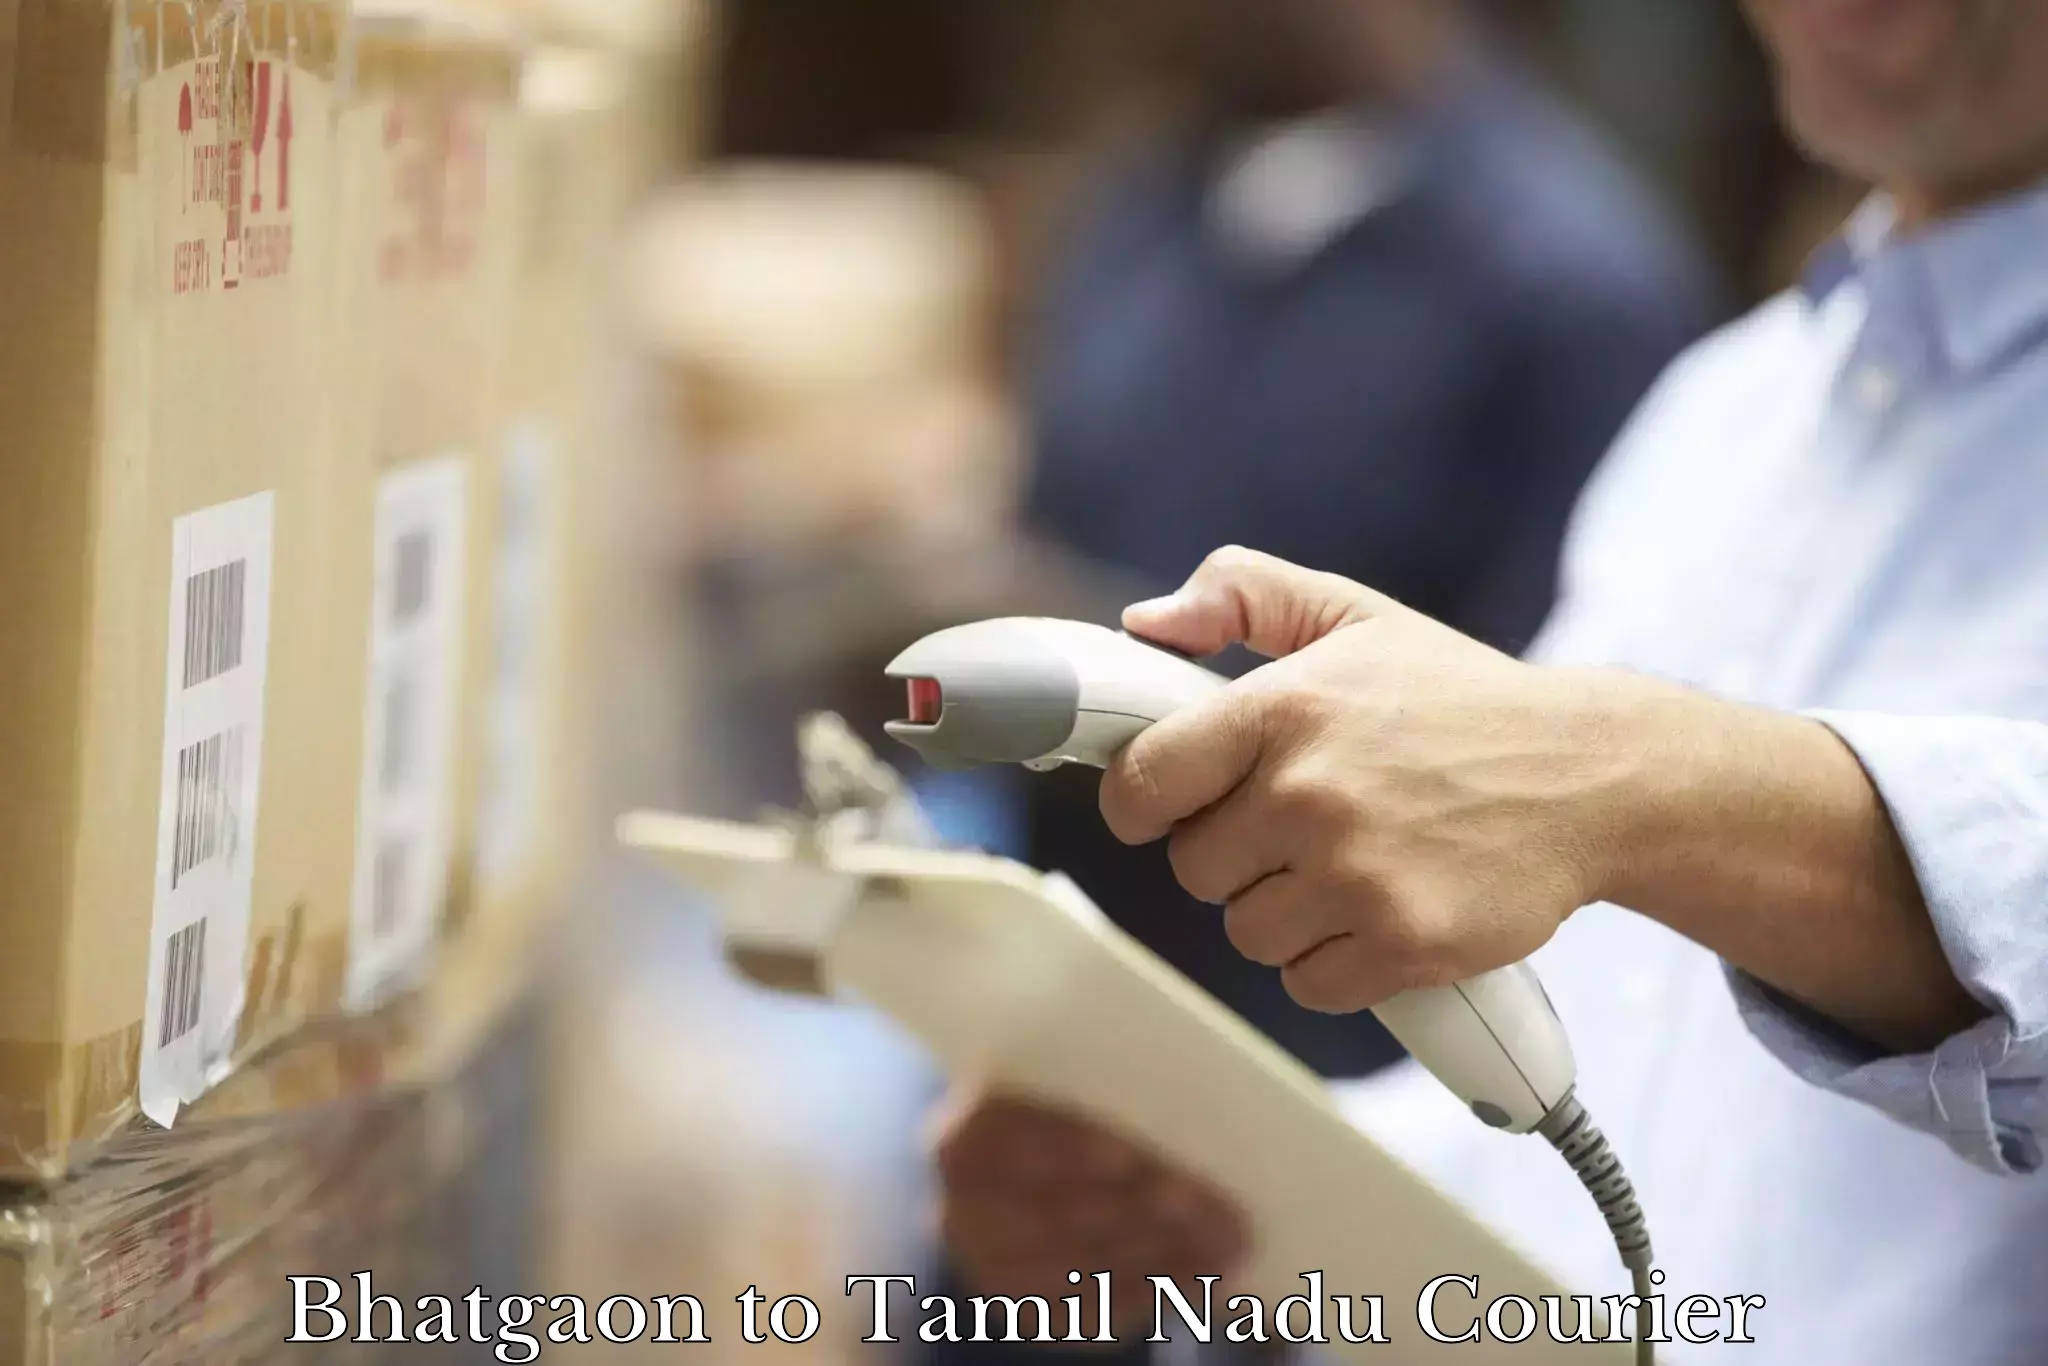 Efficient parcel service in Bhatgaon to Tamil Nadu